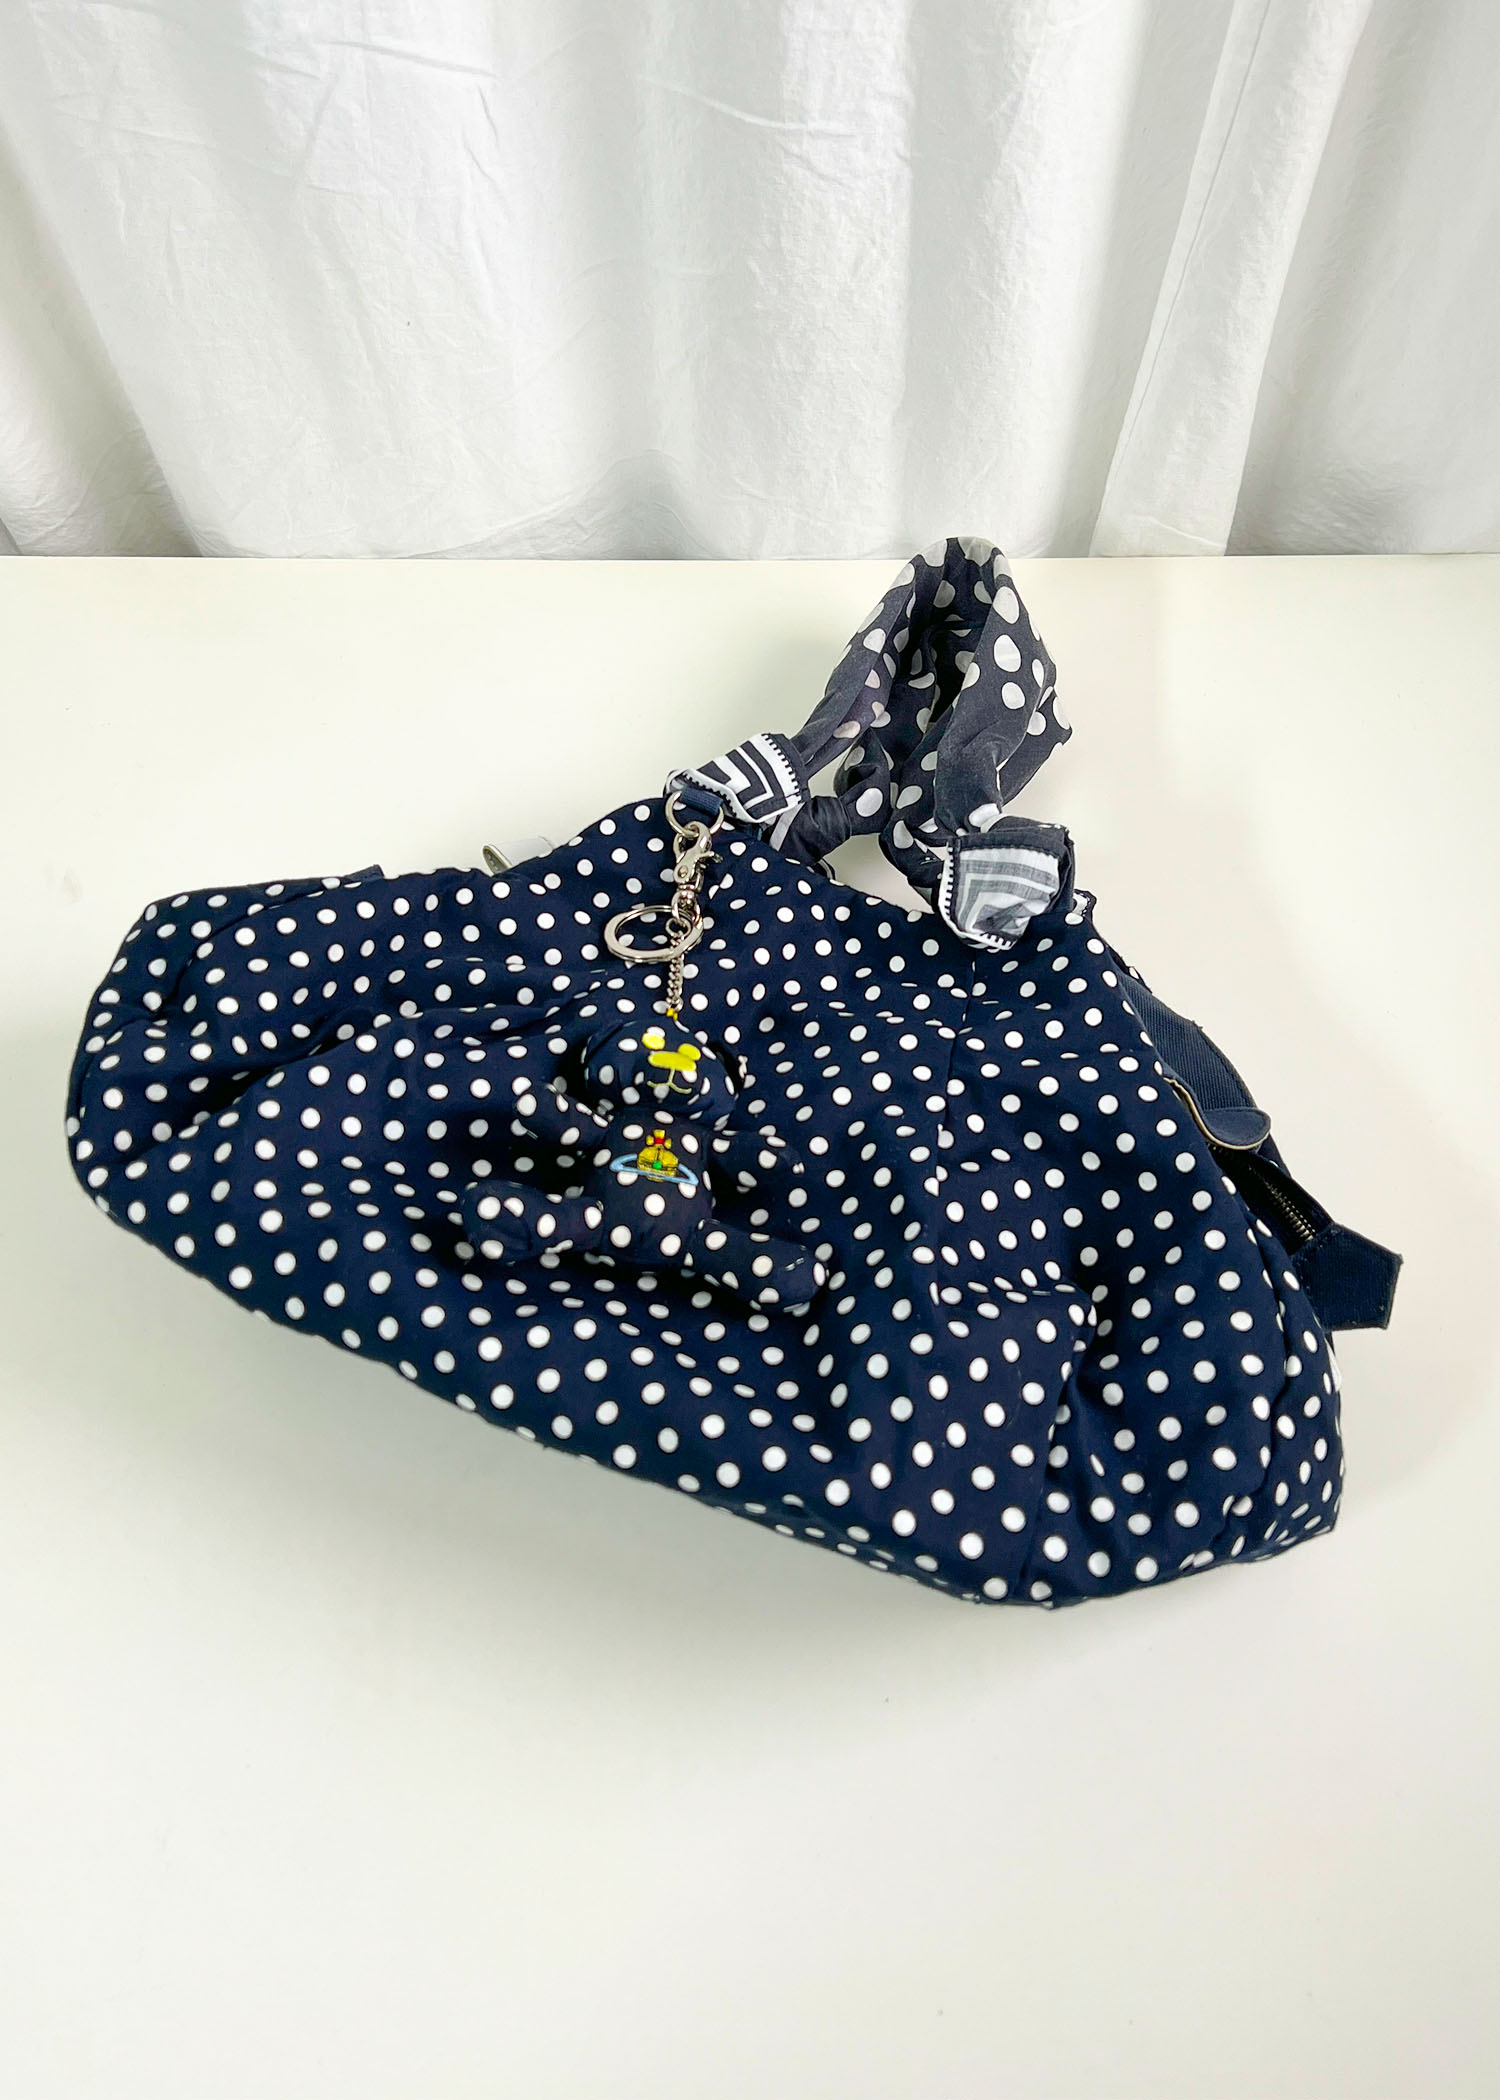 Vivienne Westwood dot pattern bag